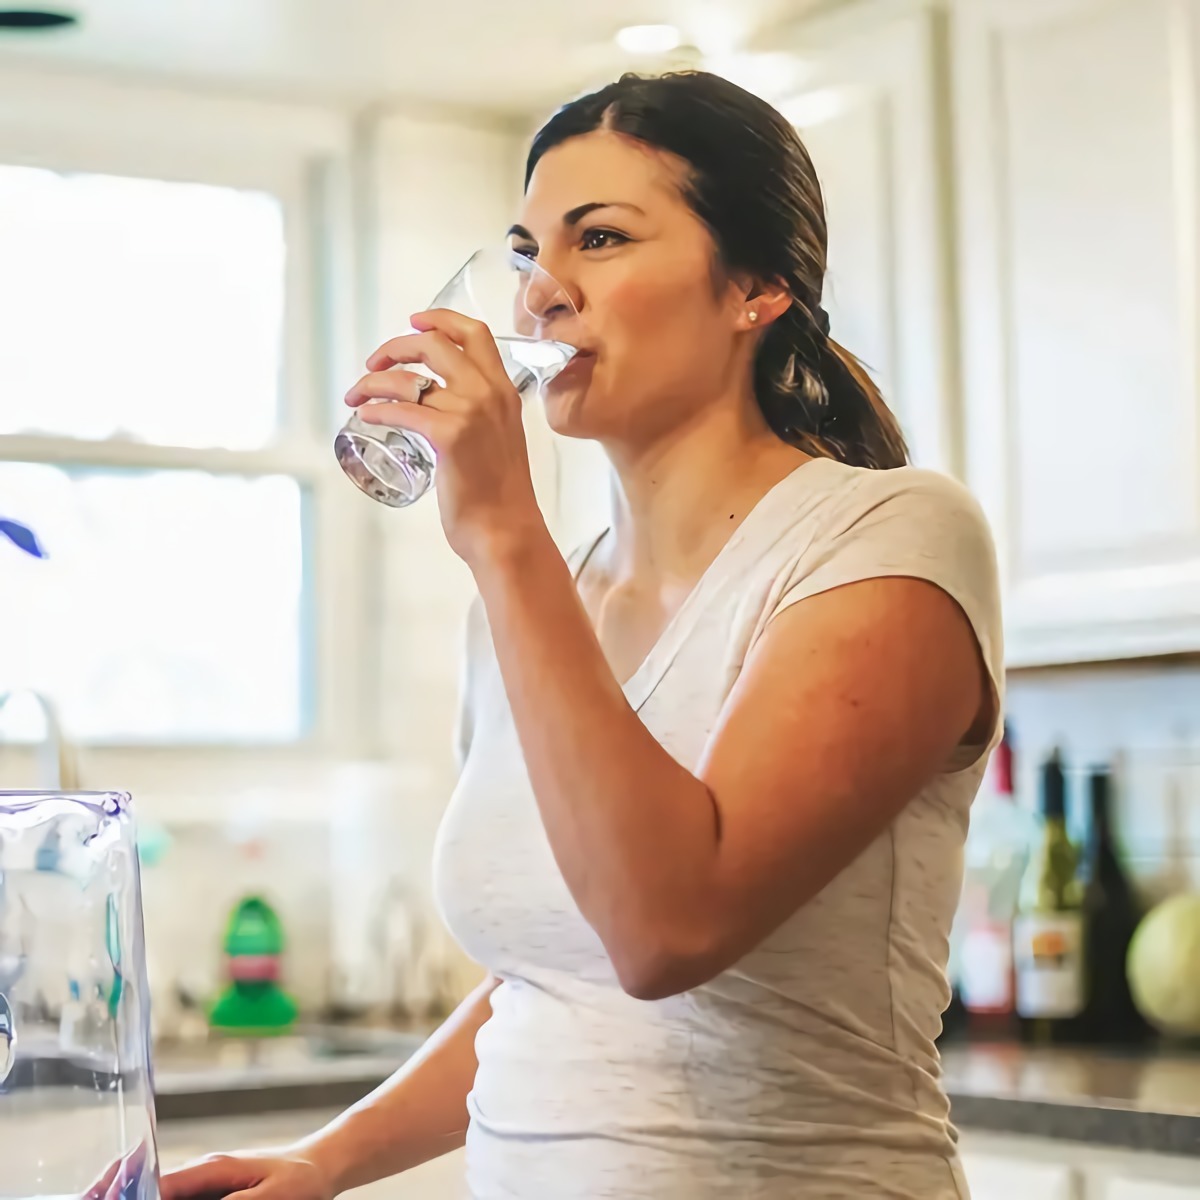 wie wichtig ist eine morgenroutine gesunde morgenrouutine zum abnehmen frau in weissem tshirt trinkt glas wasser